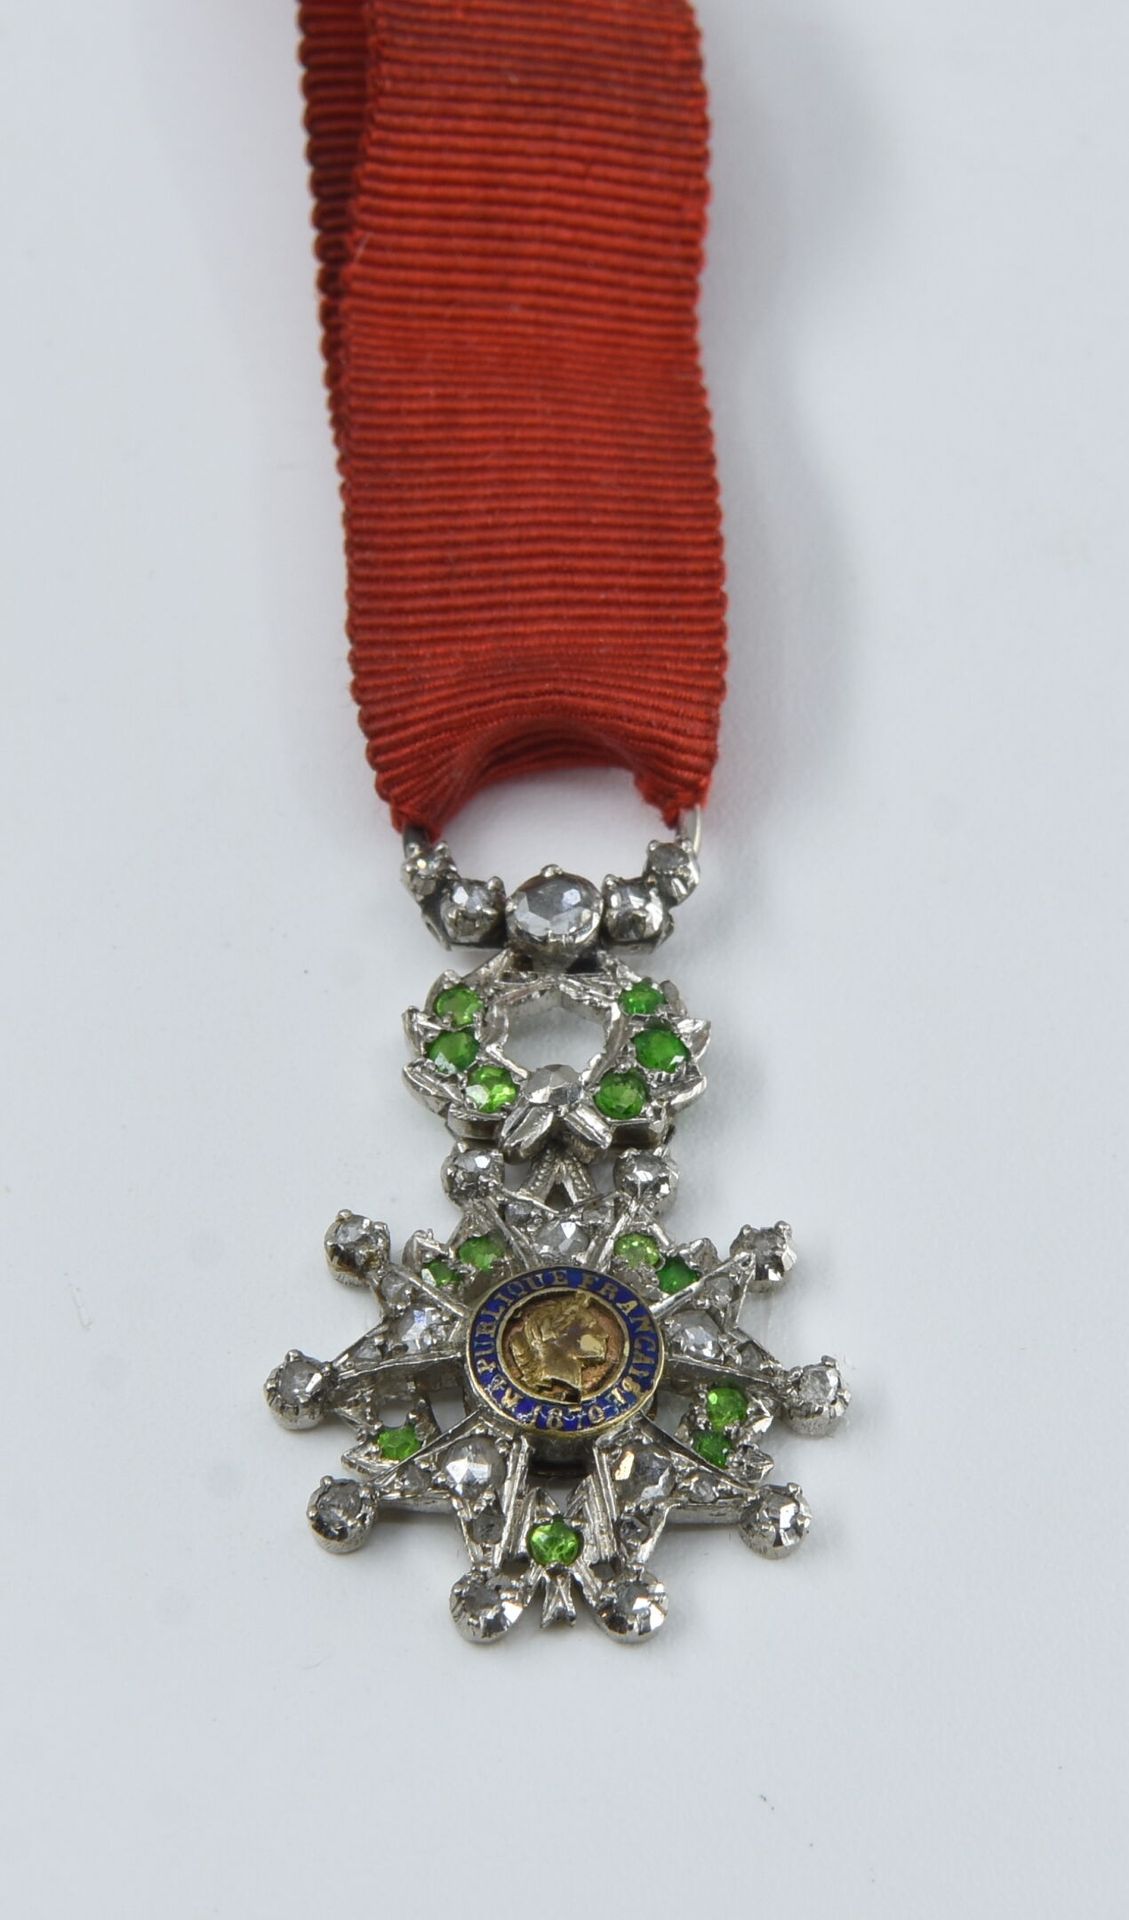 Null 铂金荣誉勋章镶嵌绿宝石和玫瑰花
毛重：3.6克 

按指定用途出售的拍品